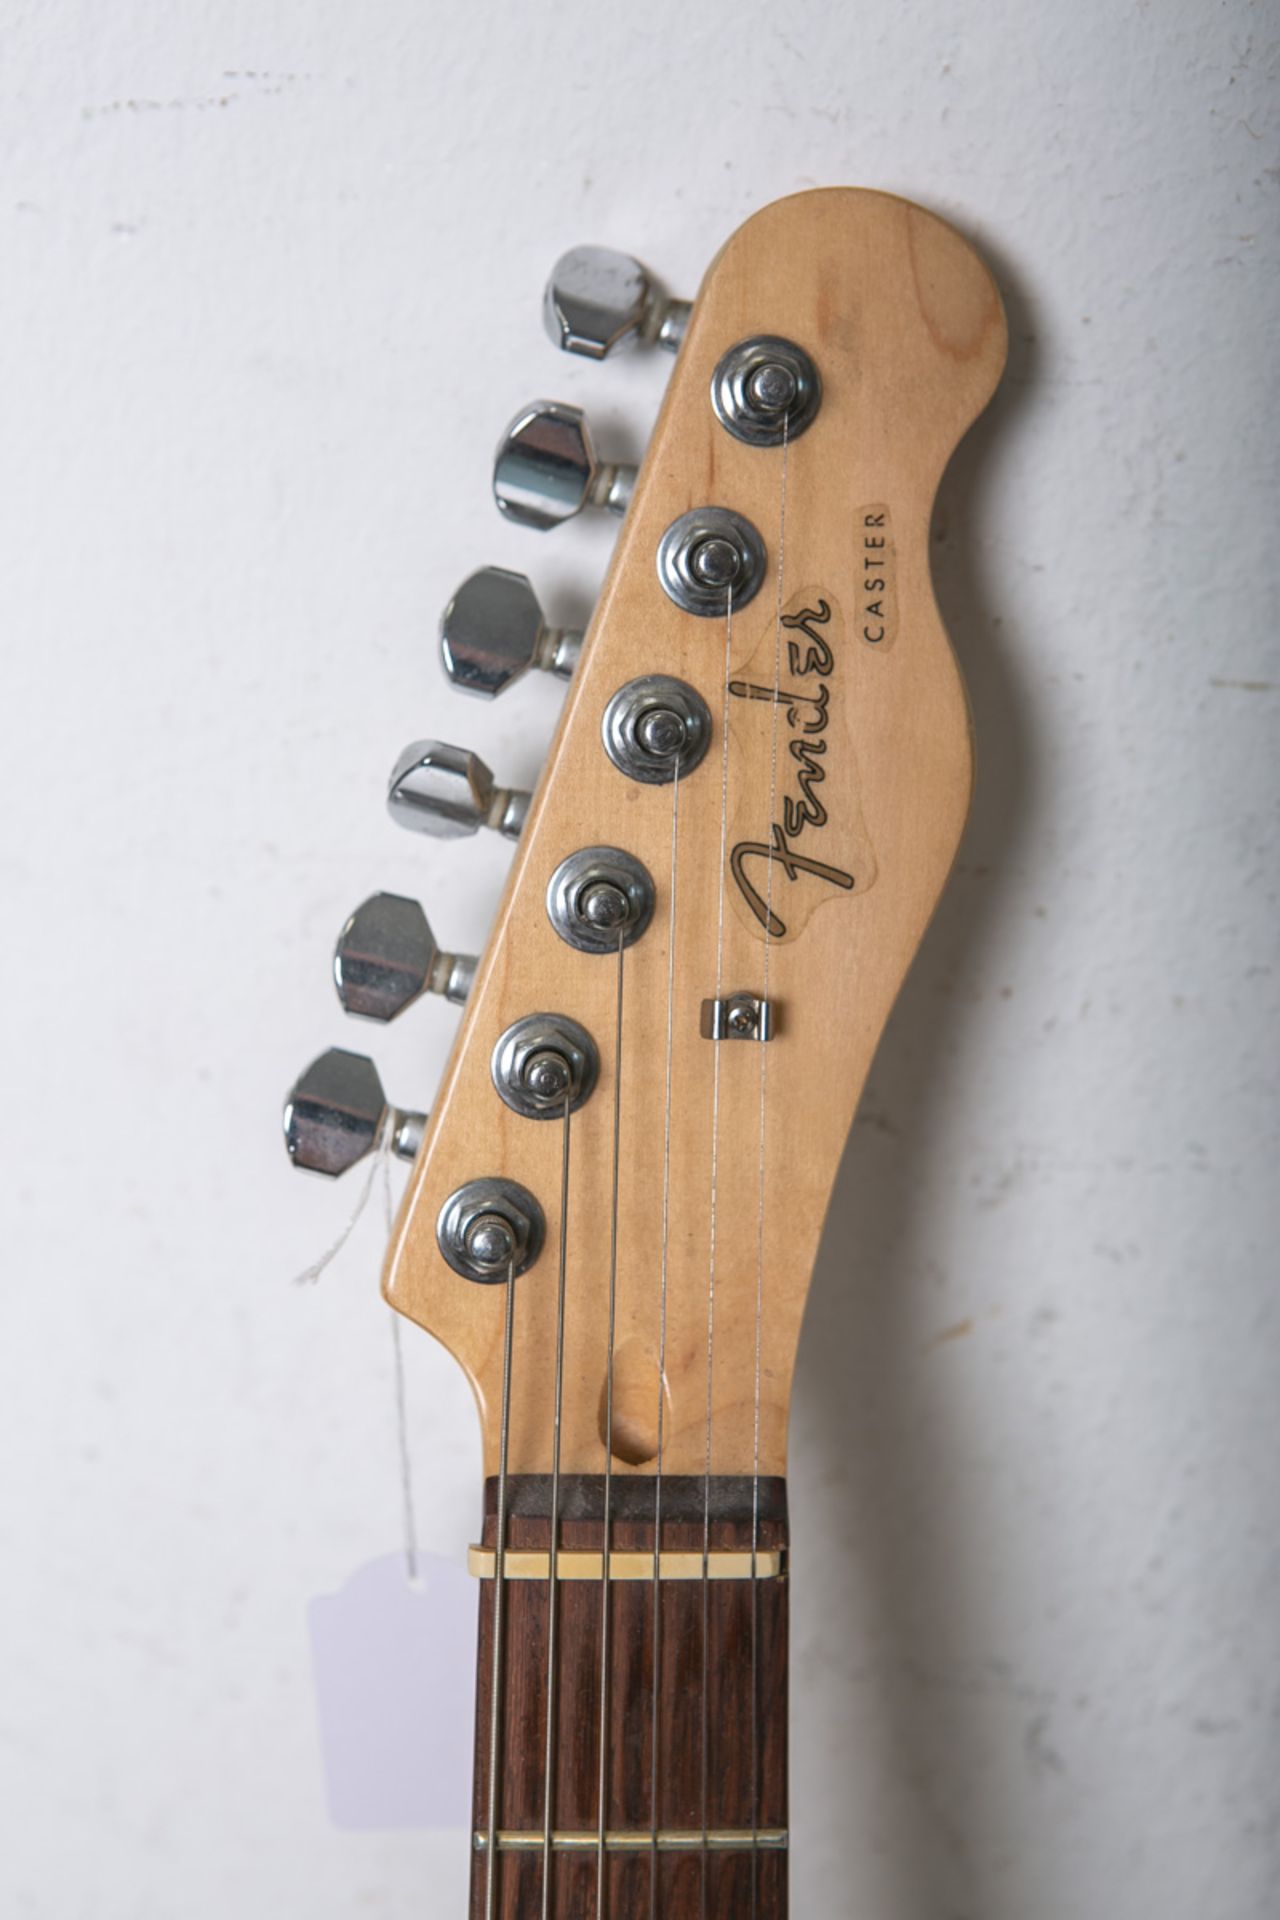 Semi-Hollowbody E-Gitarre "Fender Caster" - Image 3 of 4